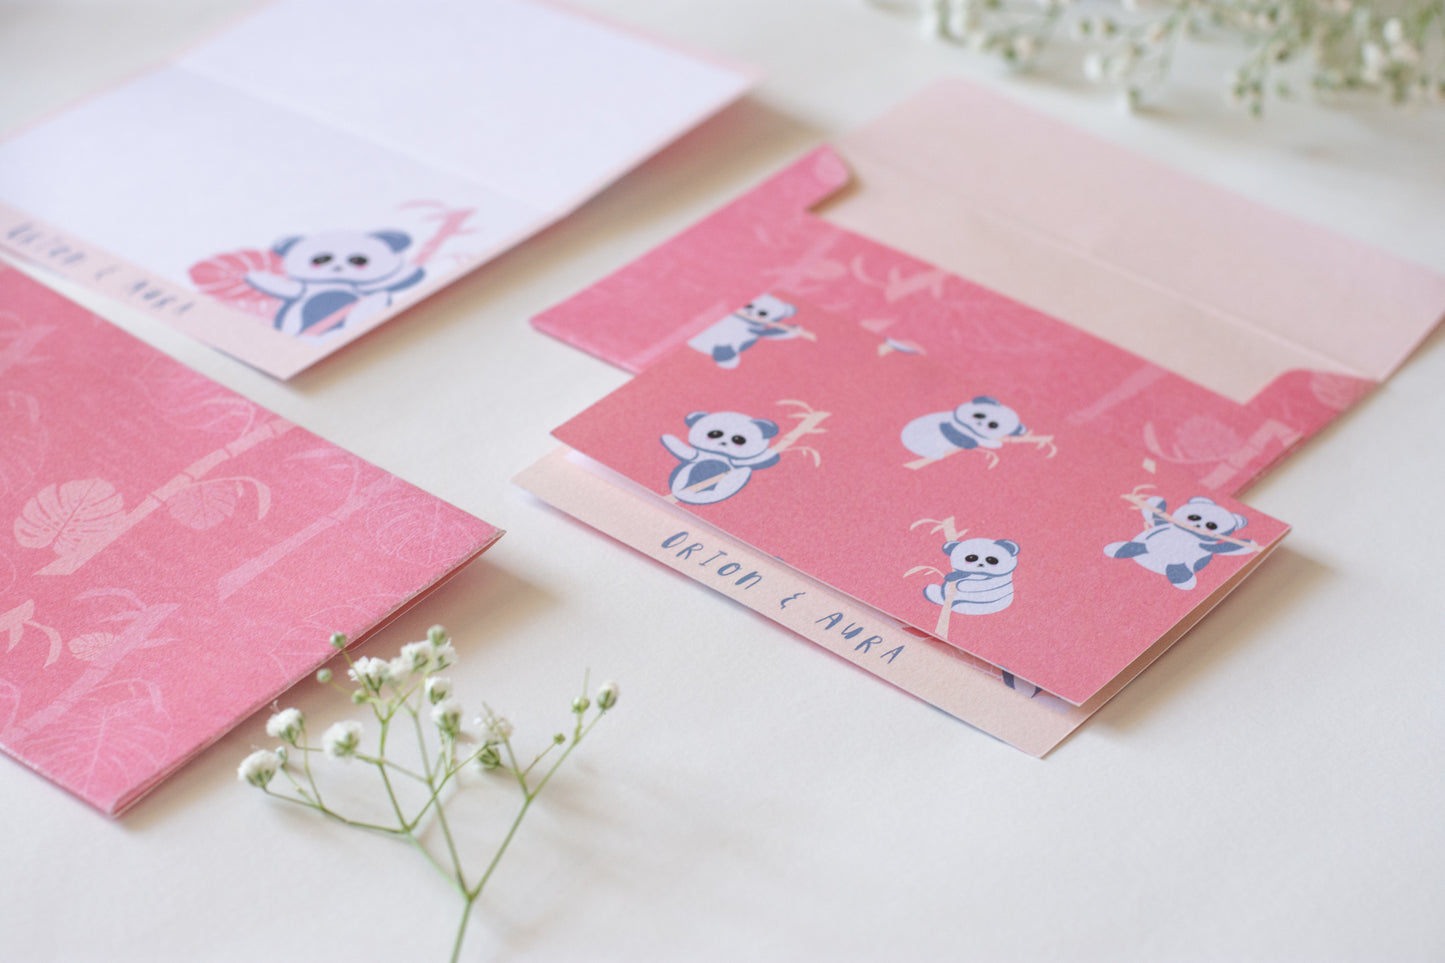 Foldable Gift Cards with Envelopes - K for Koala